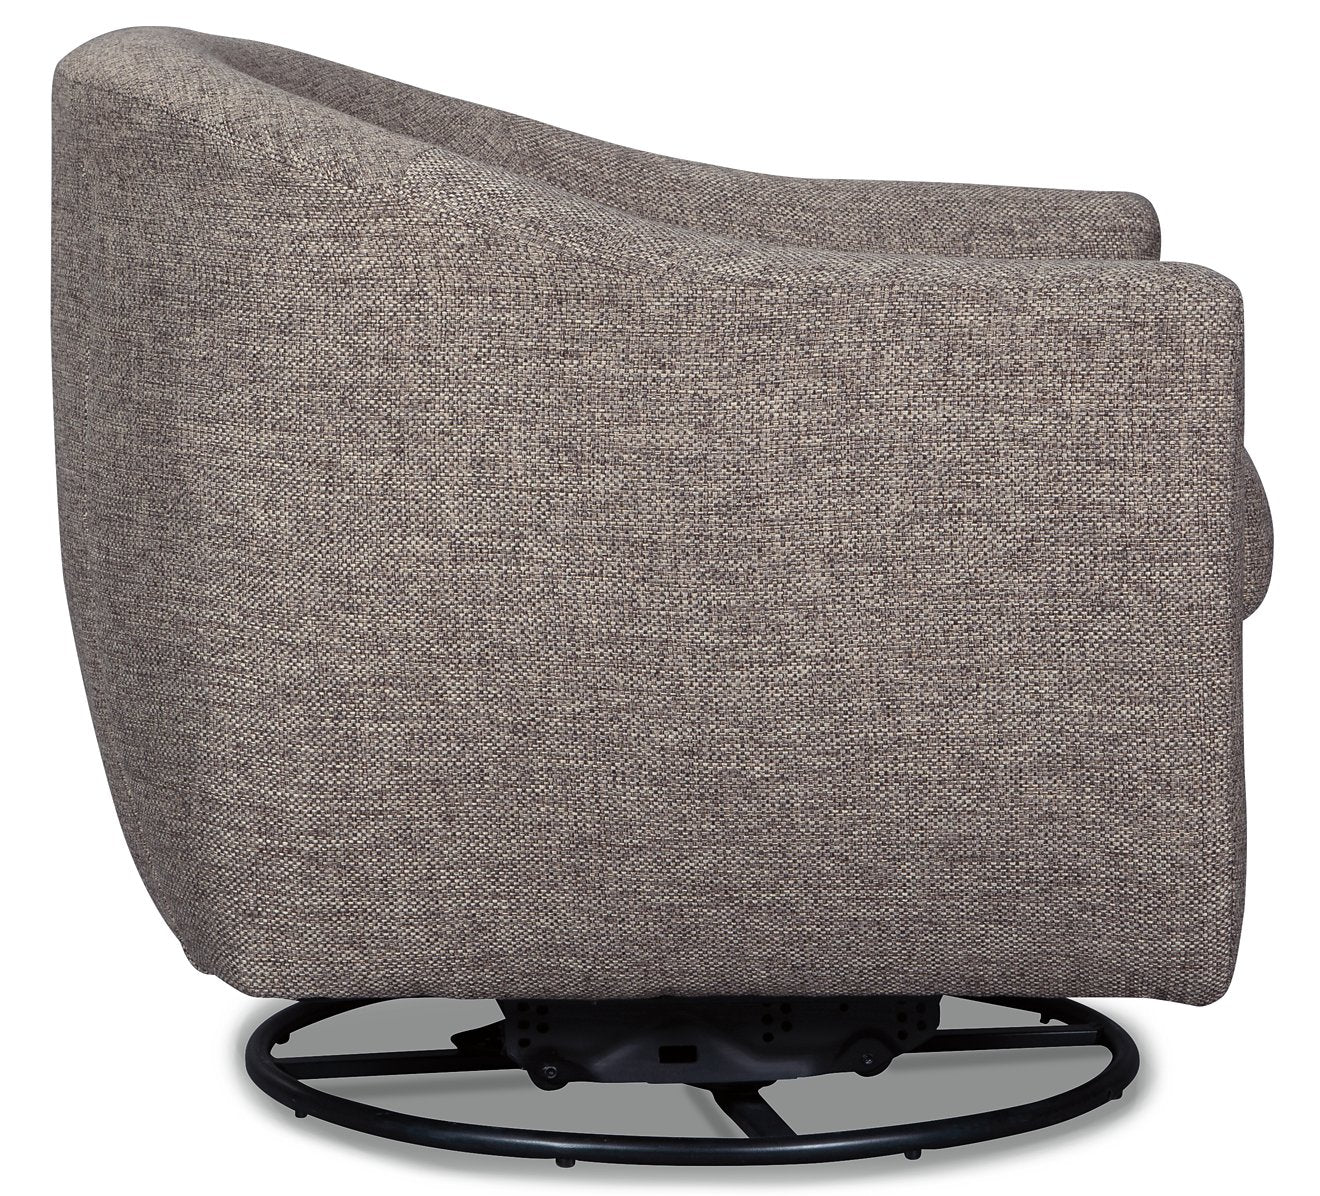 Upshur Accent Chair - Half Price Furniture